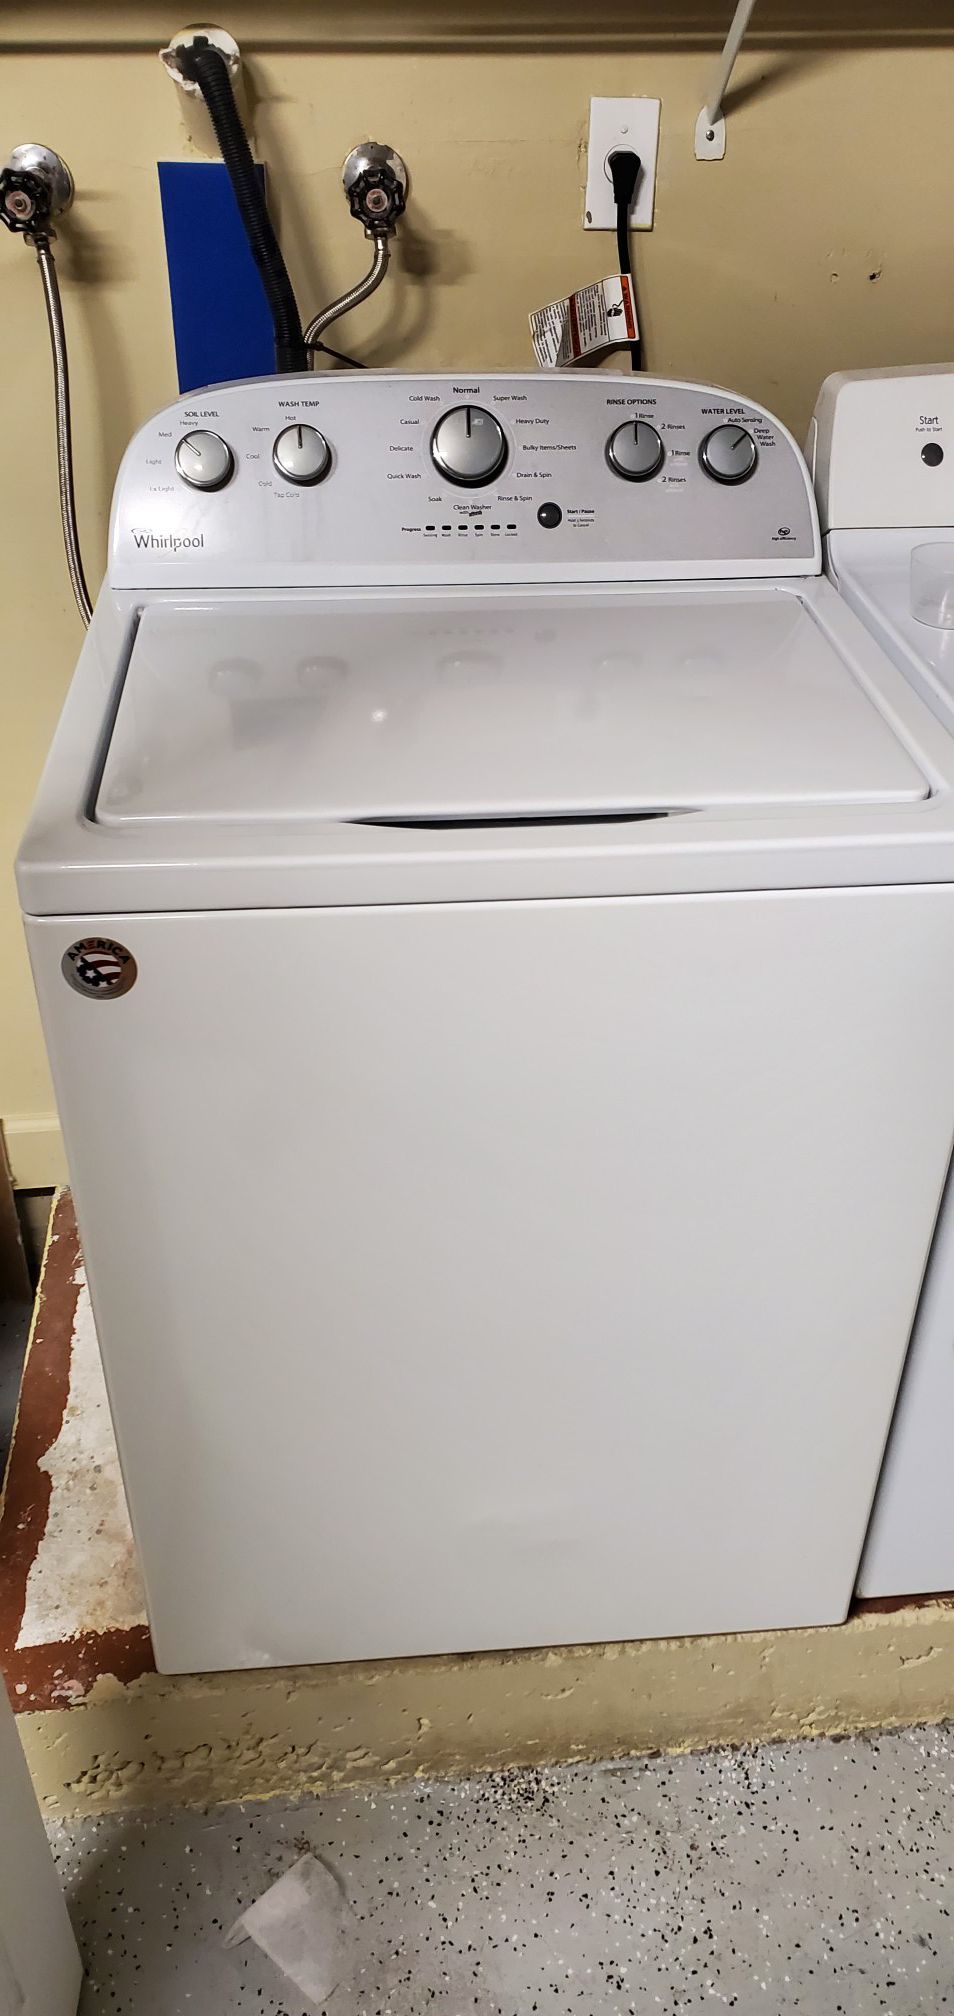 Whirlpool washer washing machine